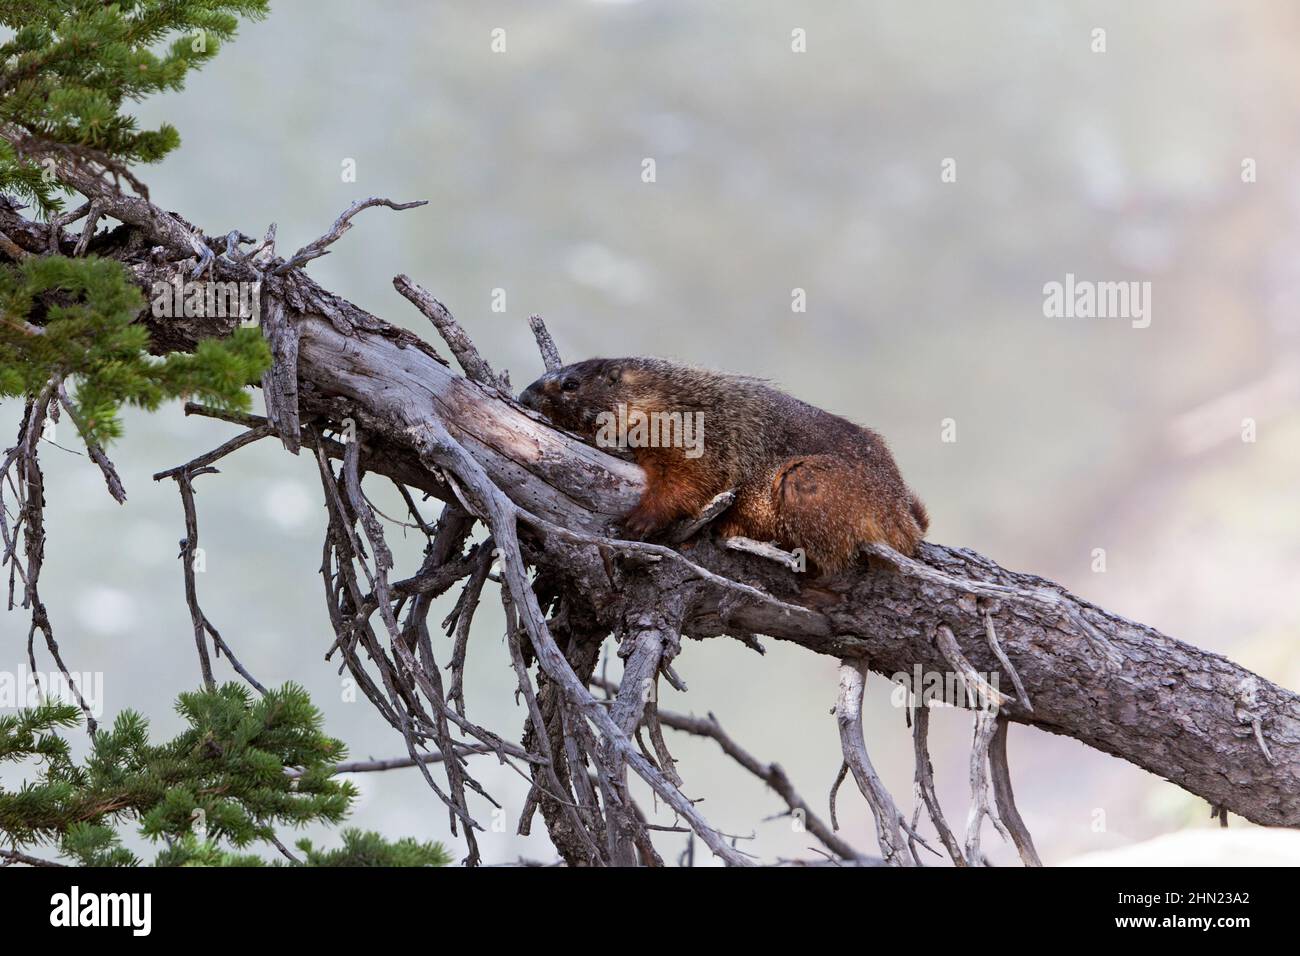 Marmot dalle decorazioni gialle (Marmota flaviventris) all'ombra dell'albero caduto, Upper Falls, Yellowstone NP, Wyoming, USA Foto Stock